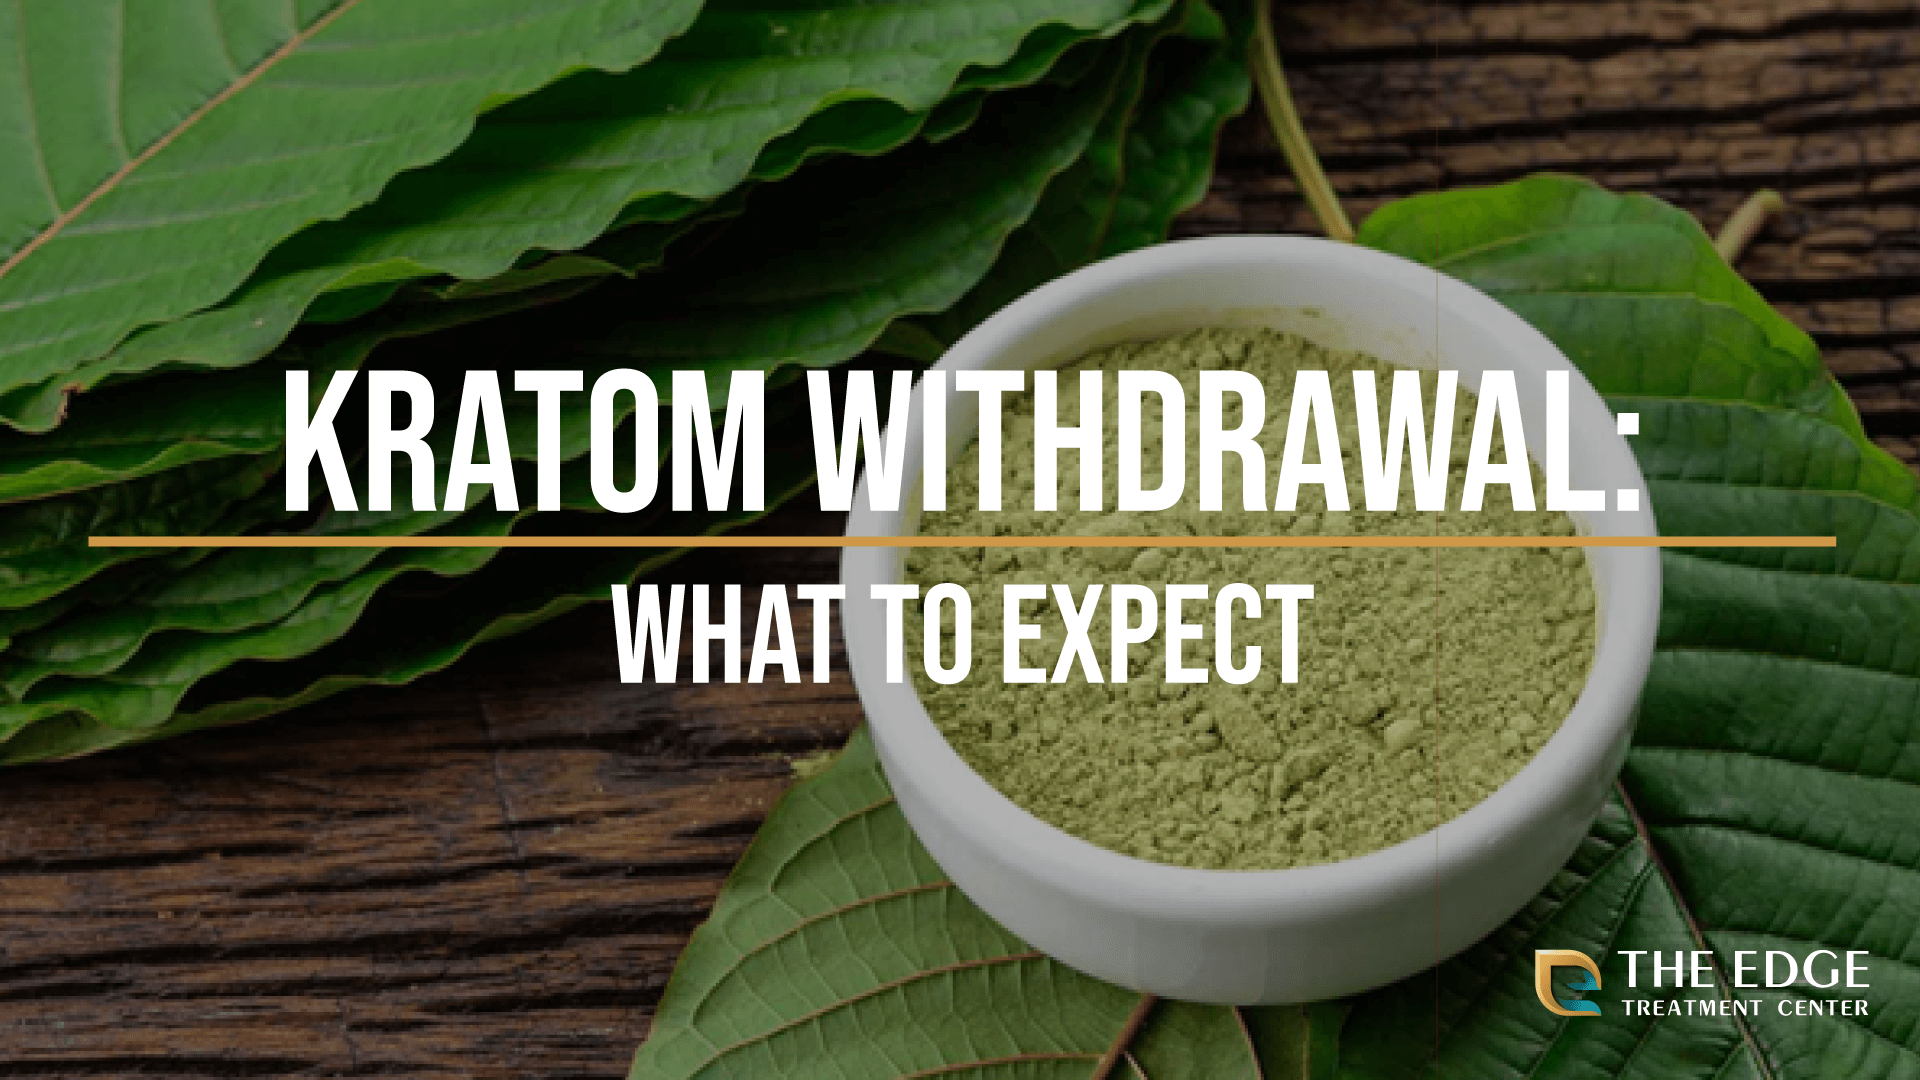 What is Kratom Withdrawal Like?